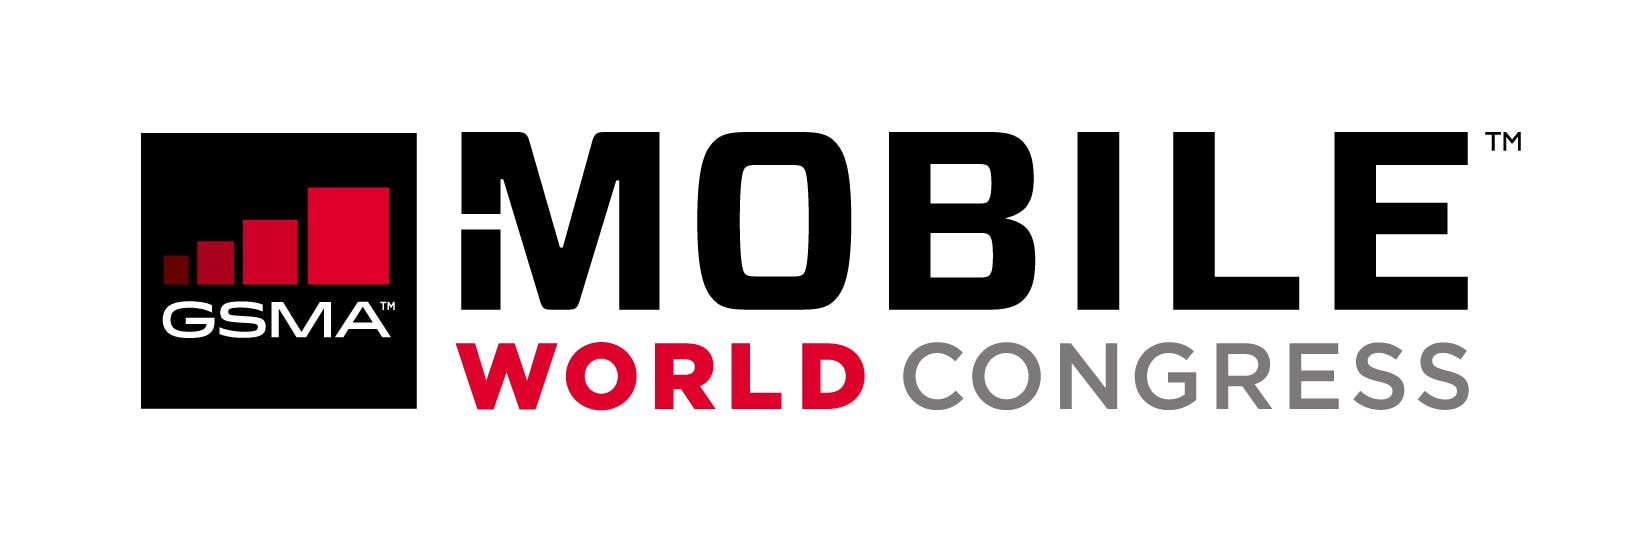 Mobile World Congress 2017 - Mobile World Congress 2017